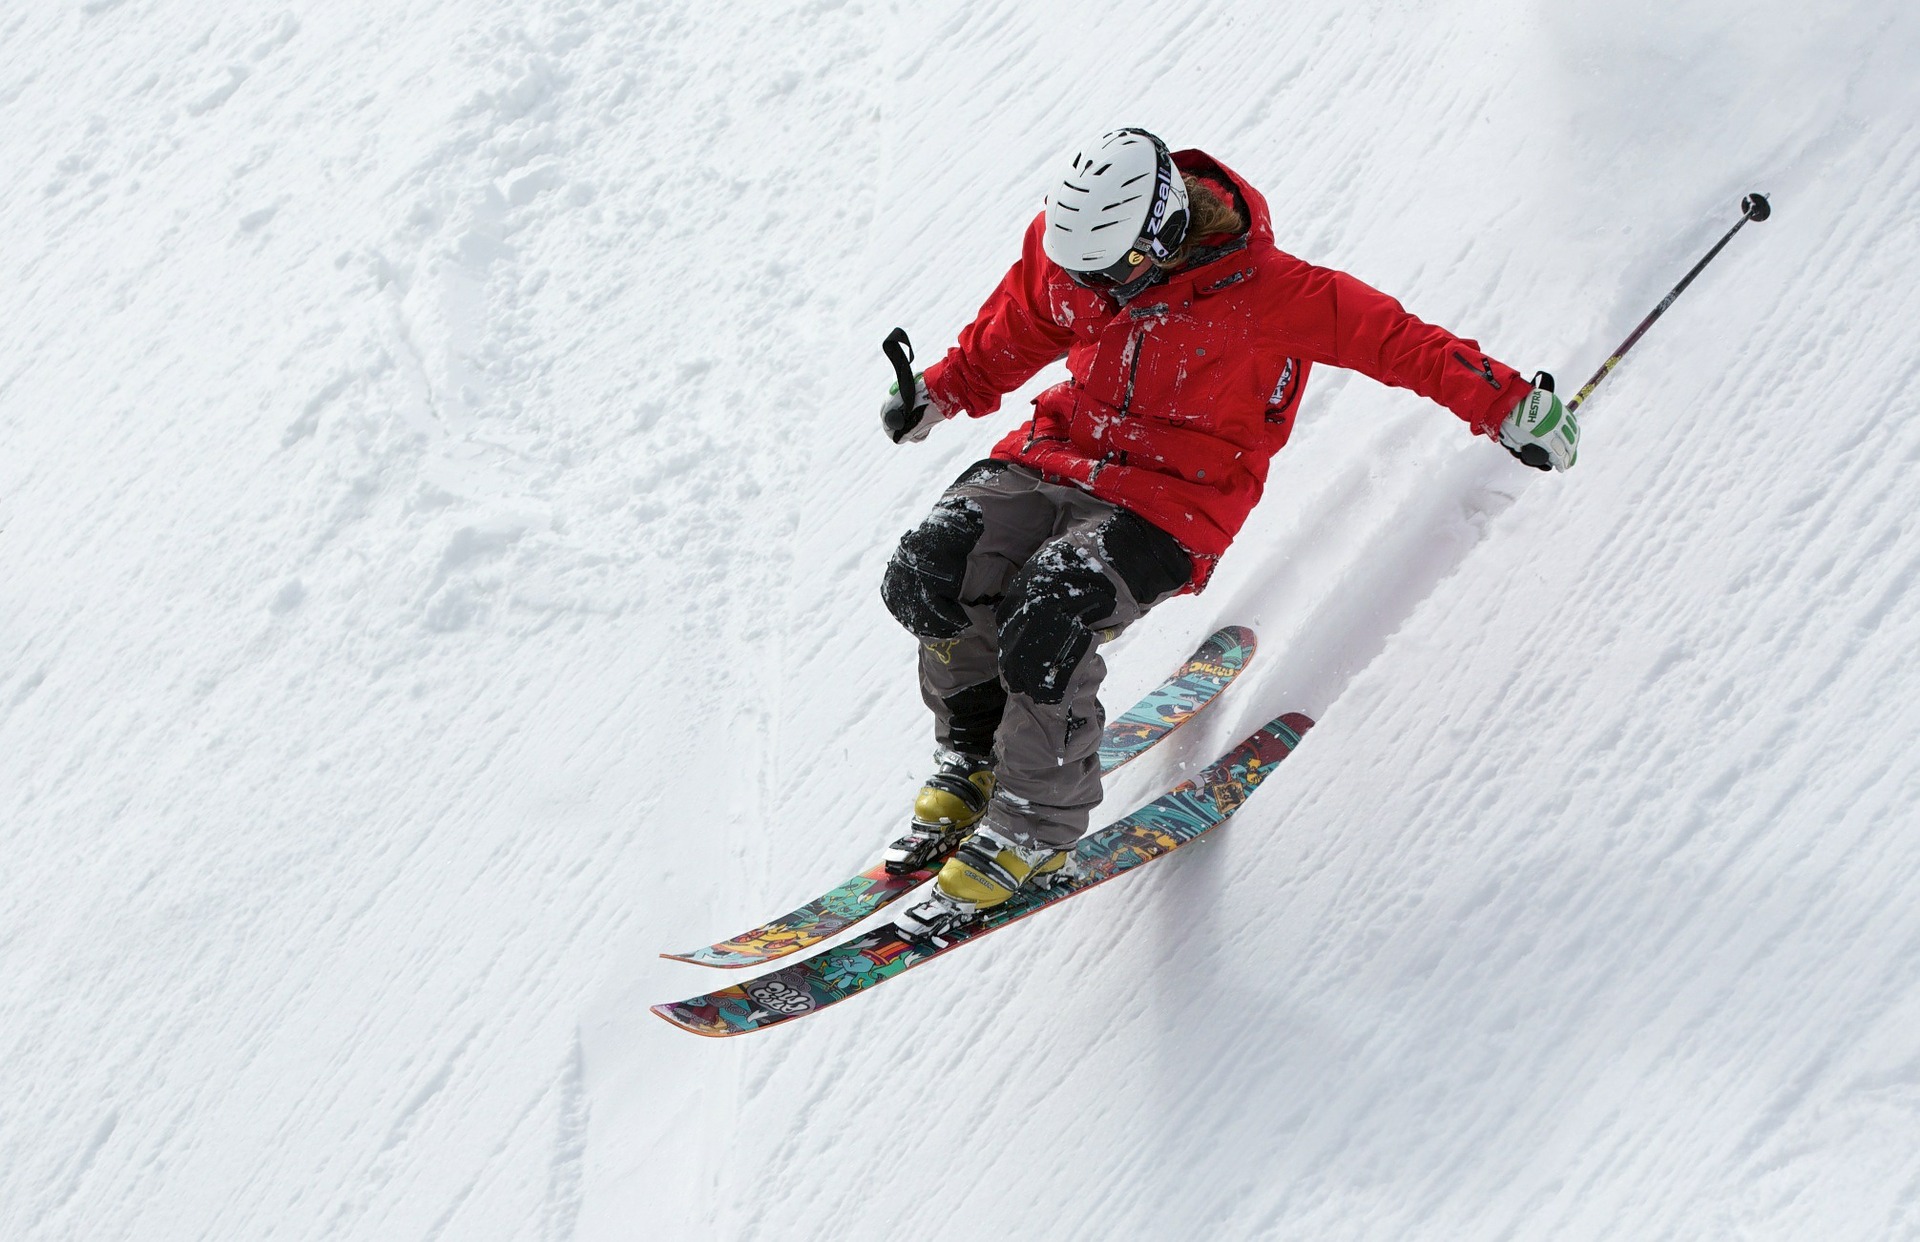 Skier red jacket steep slope 1920 × 1242